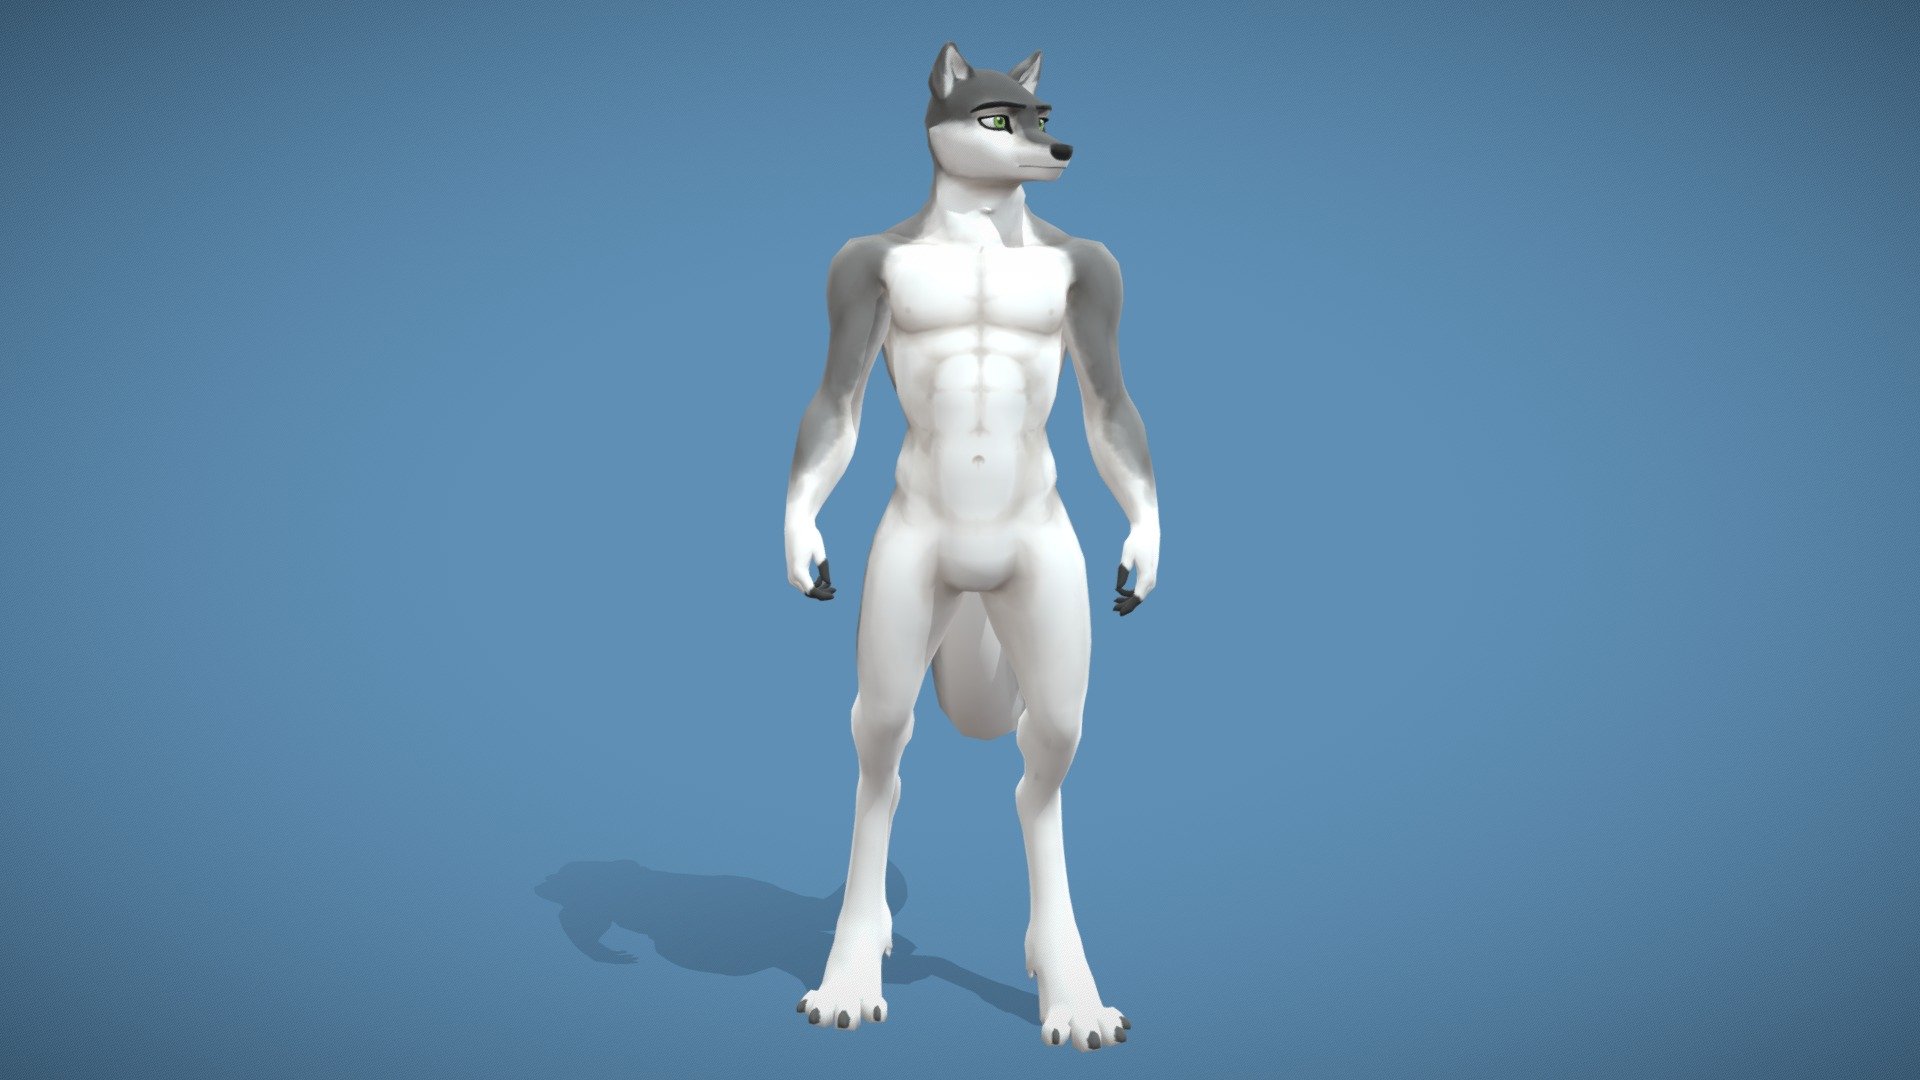 Blender 3D Wolf Modeling tutorial pt.1 